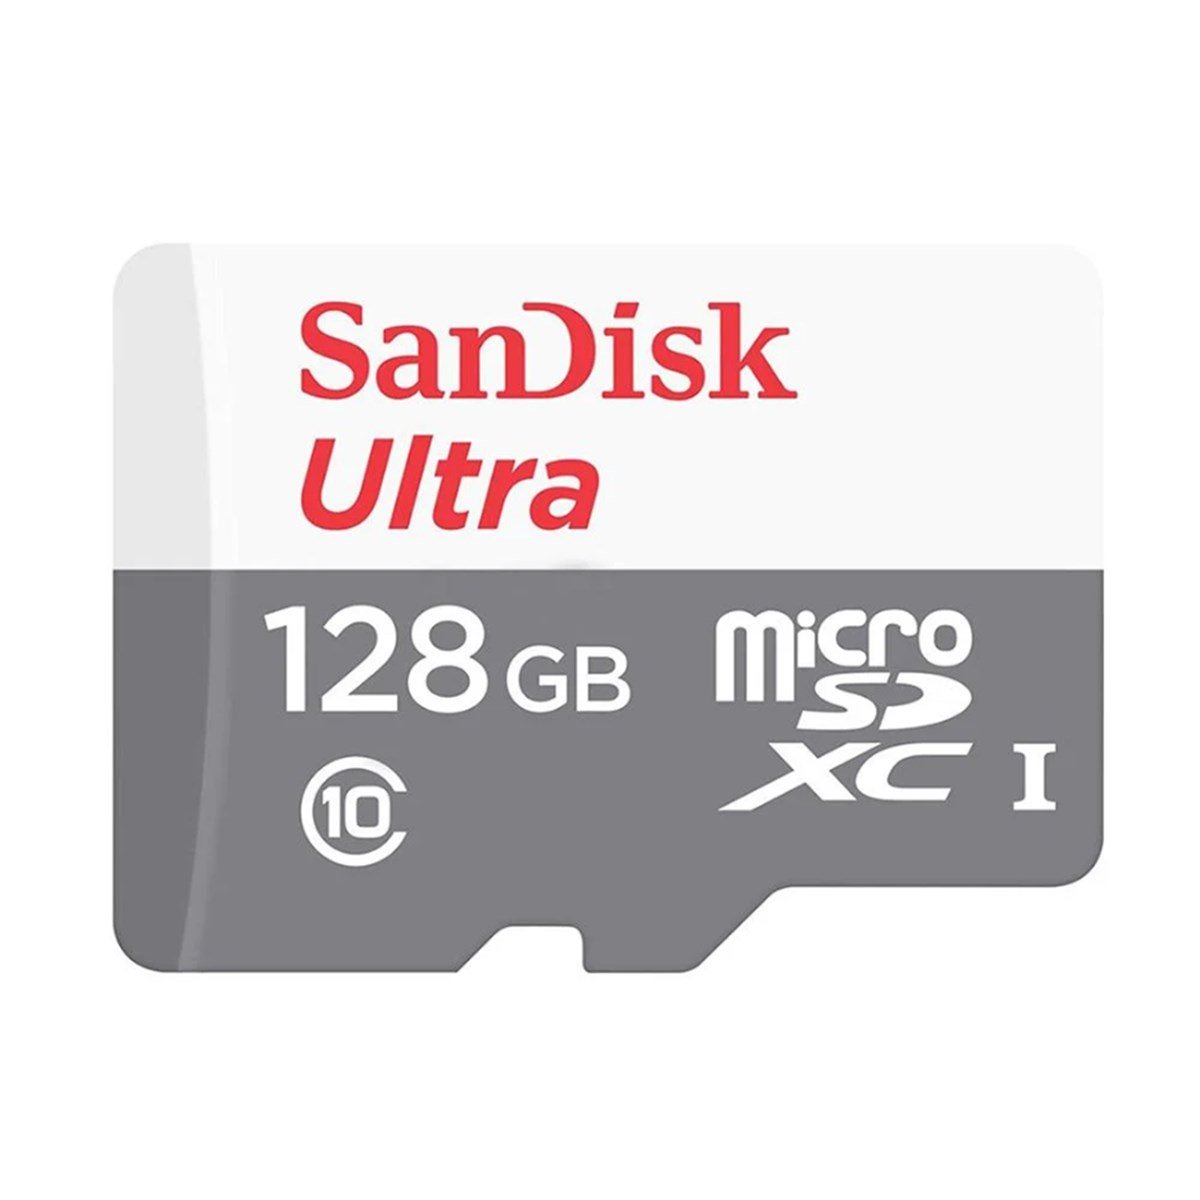 Sandisk Ultra MicroSDXC UHS-I 100 MBs 128 GB Hafıza Kartı